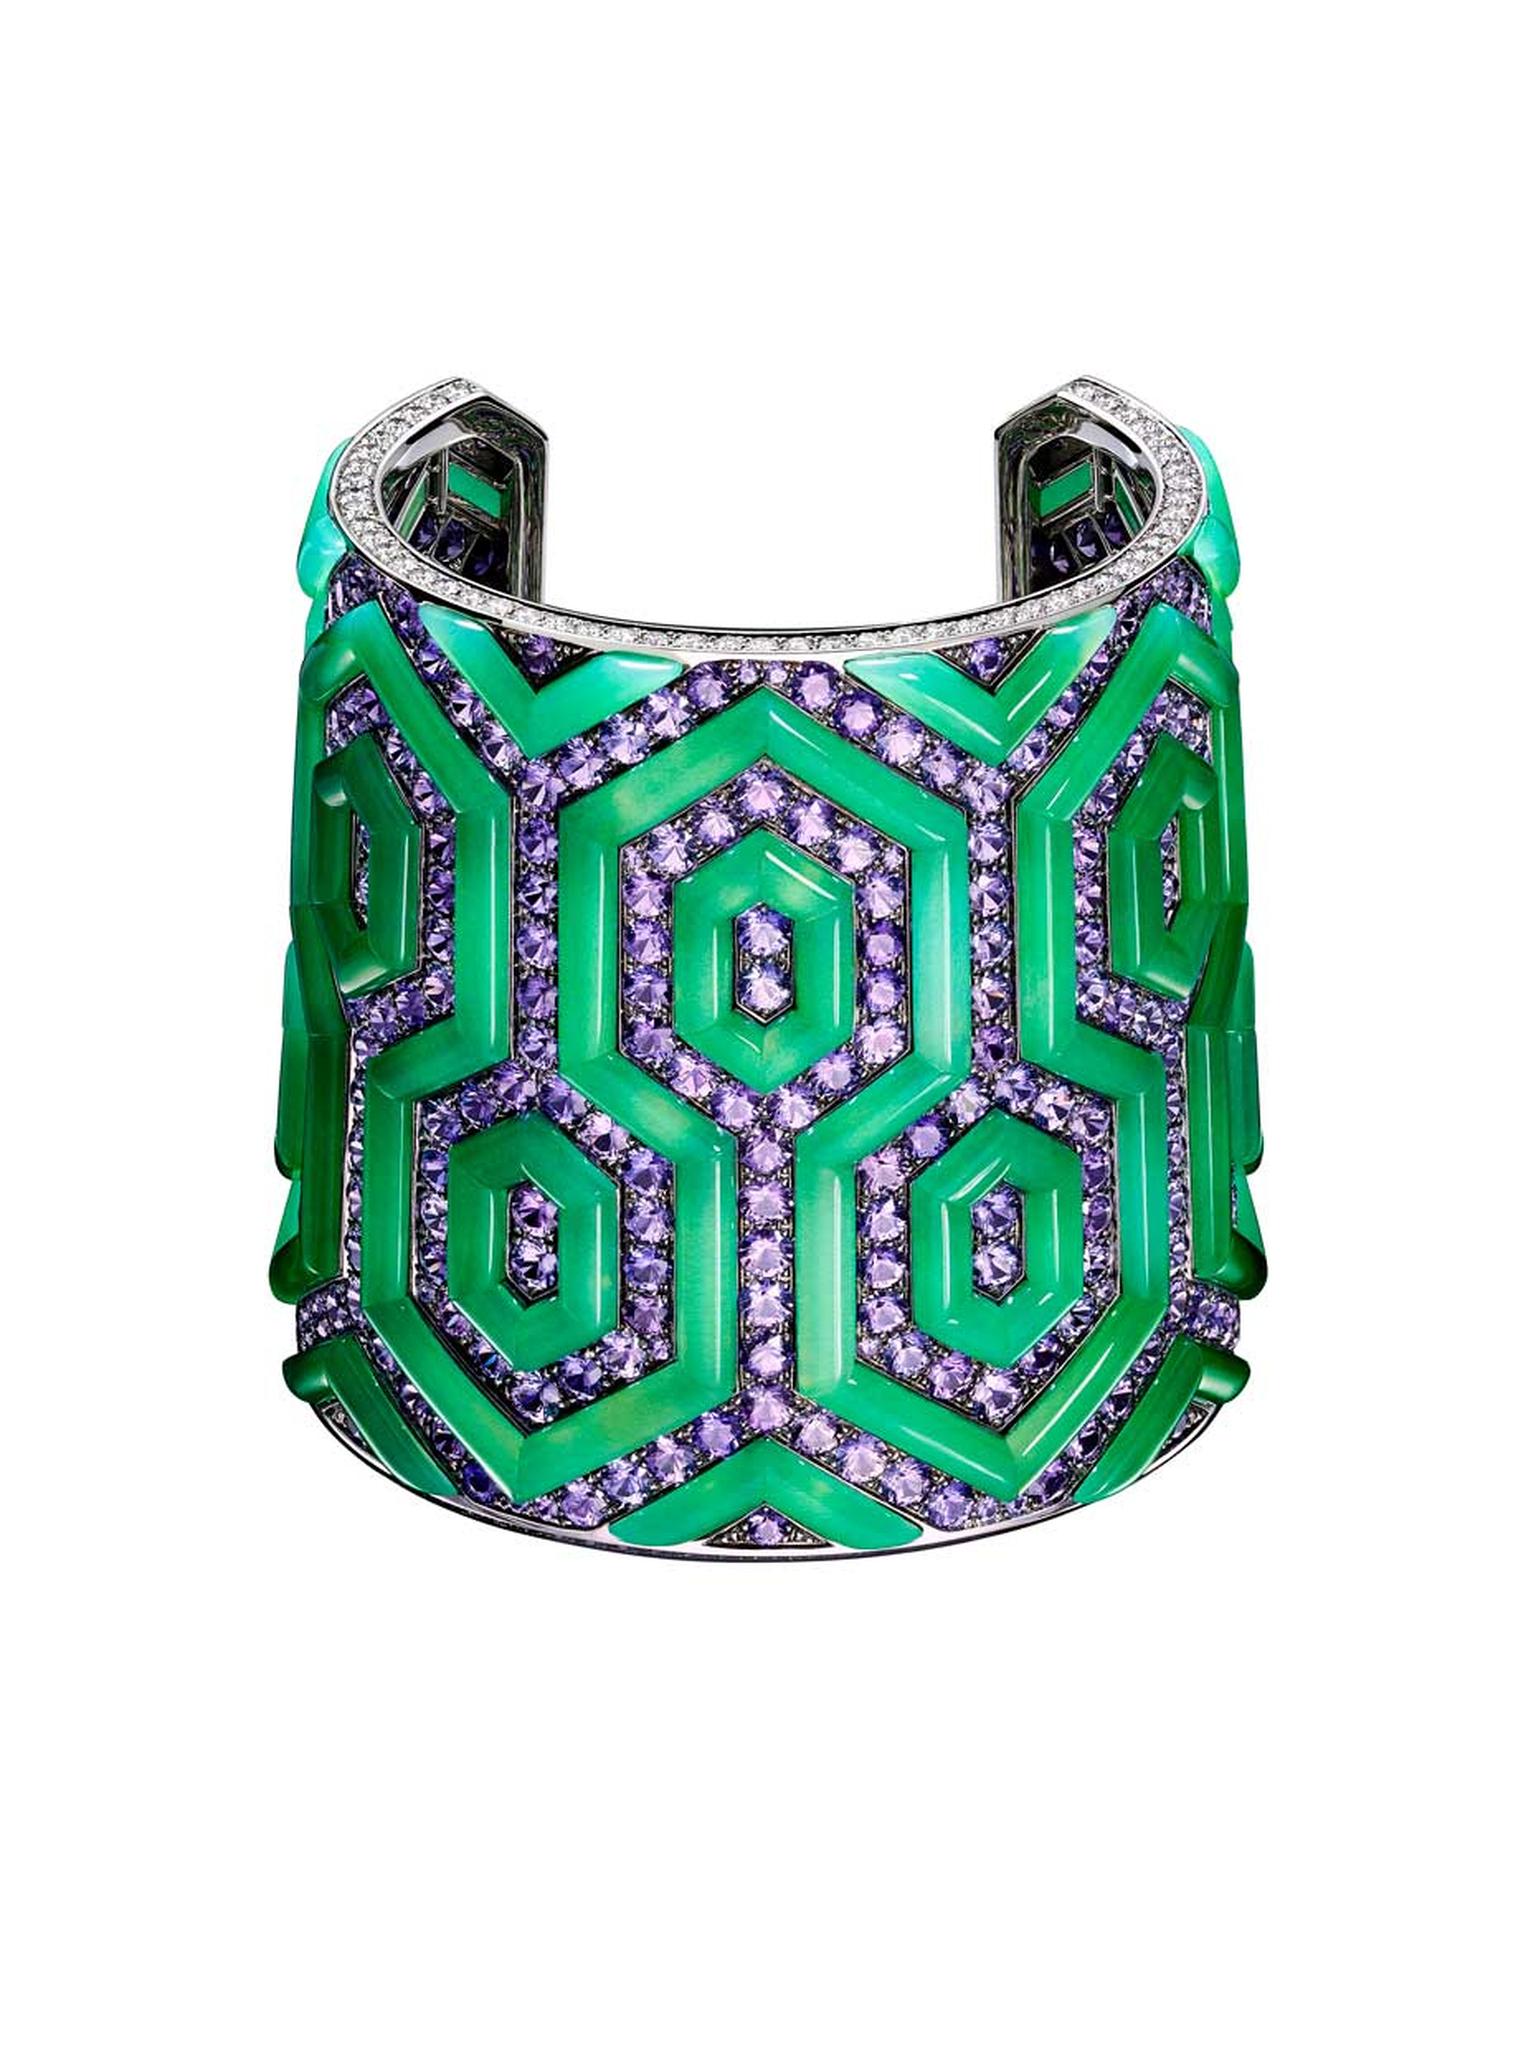 Bodino Byzantine cuff with diamonds.